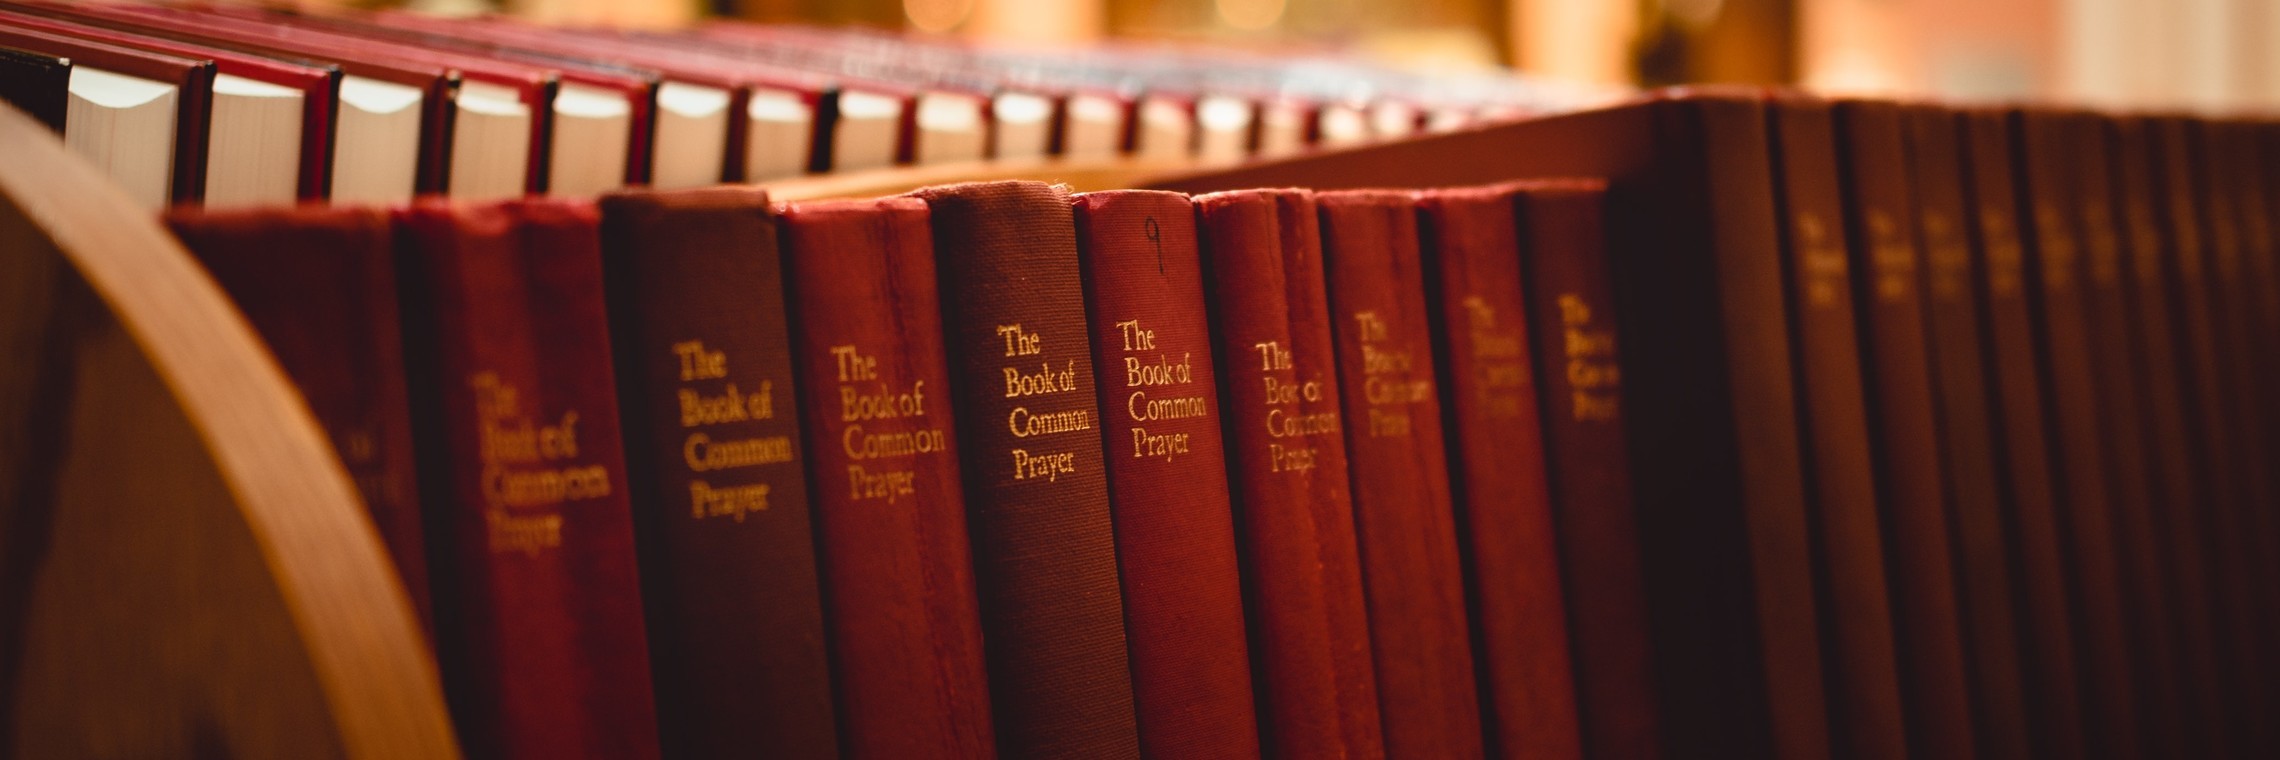 Shelf full of the Book of Common Prayer